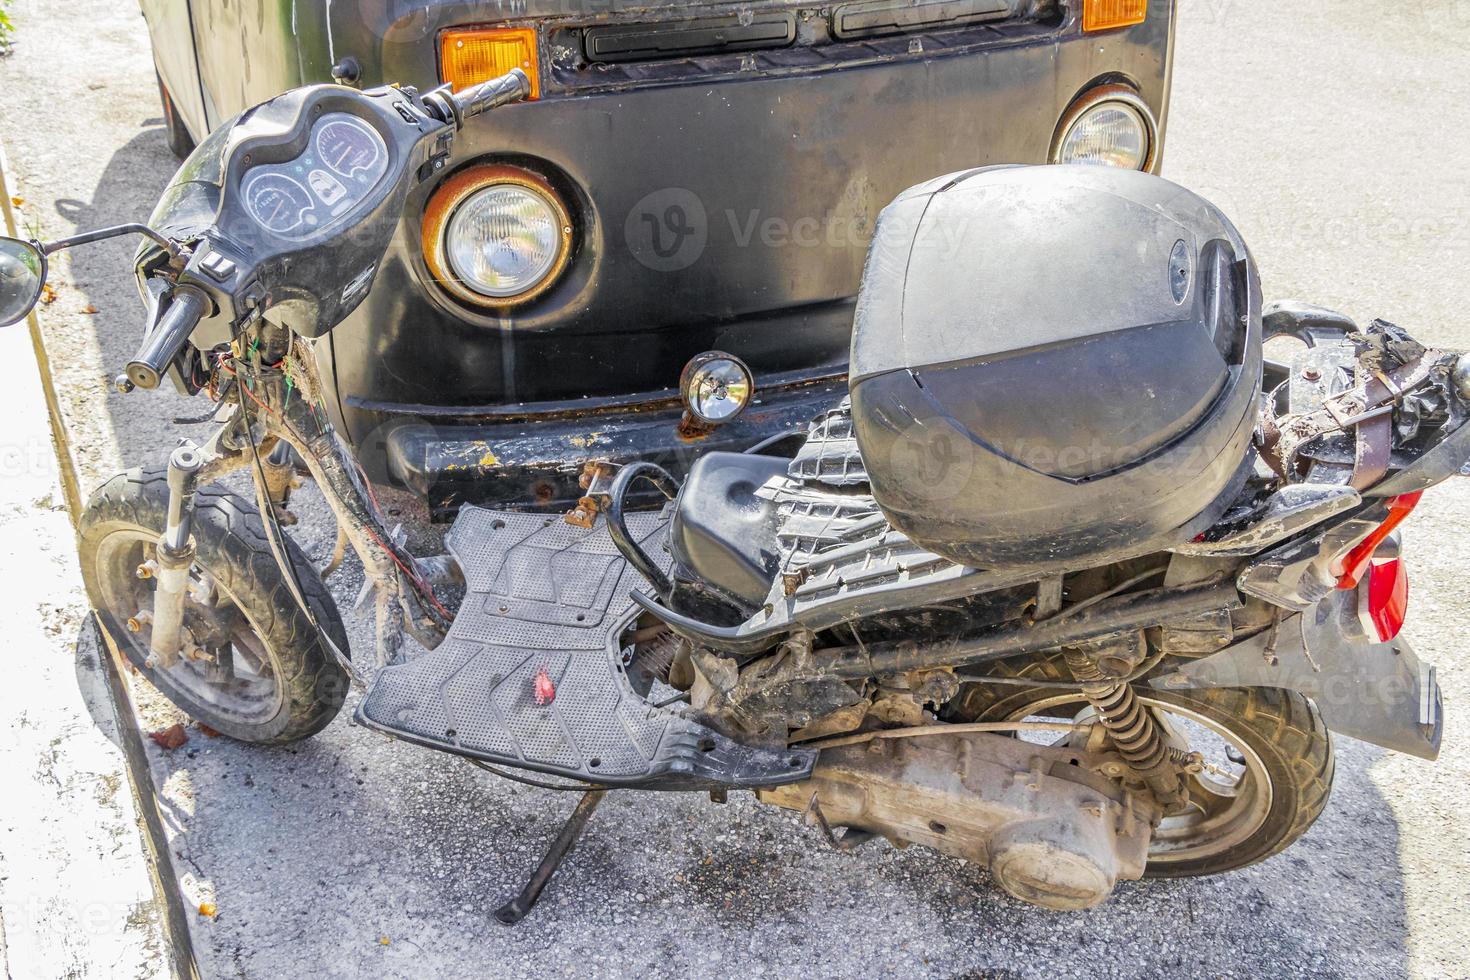 viejo roto sucio vw bus volkswagen coche scooter oxidando mexico. foto